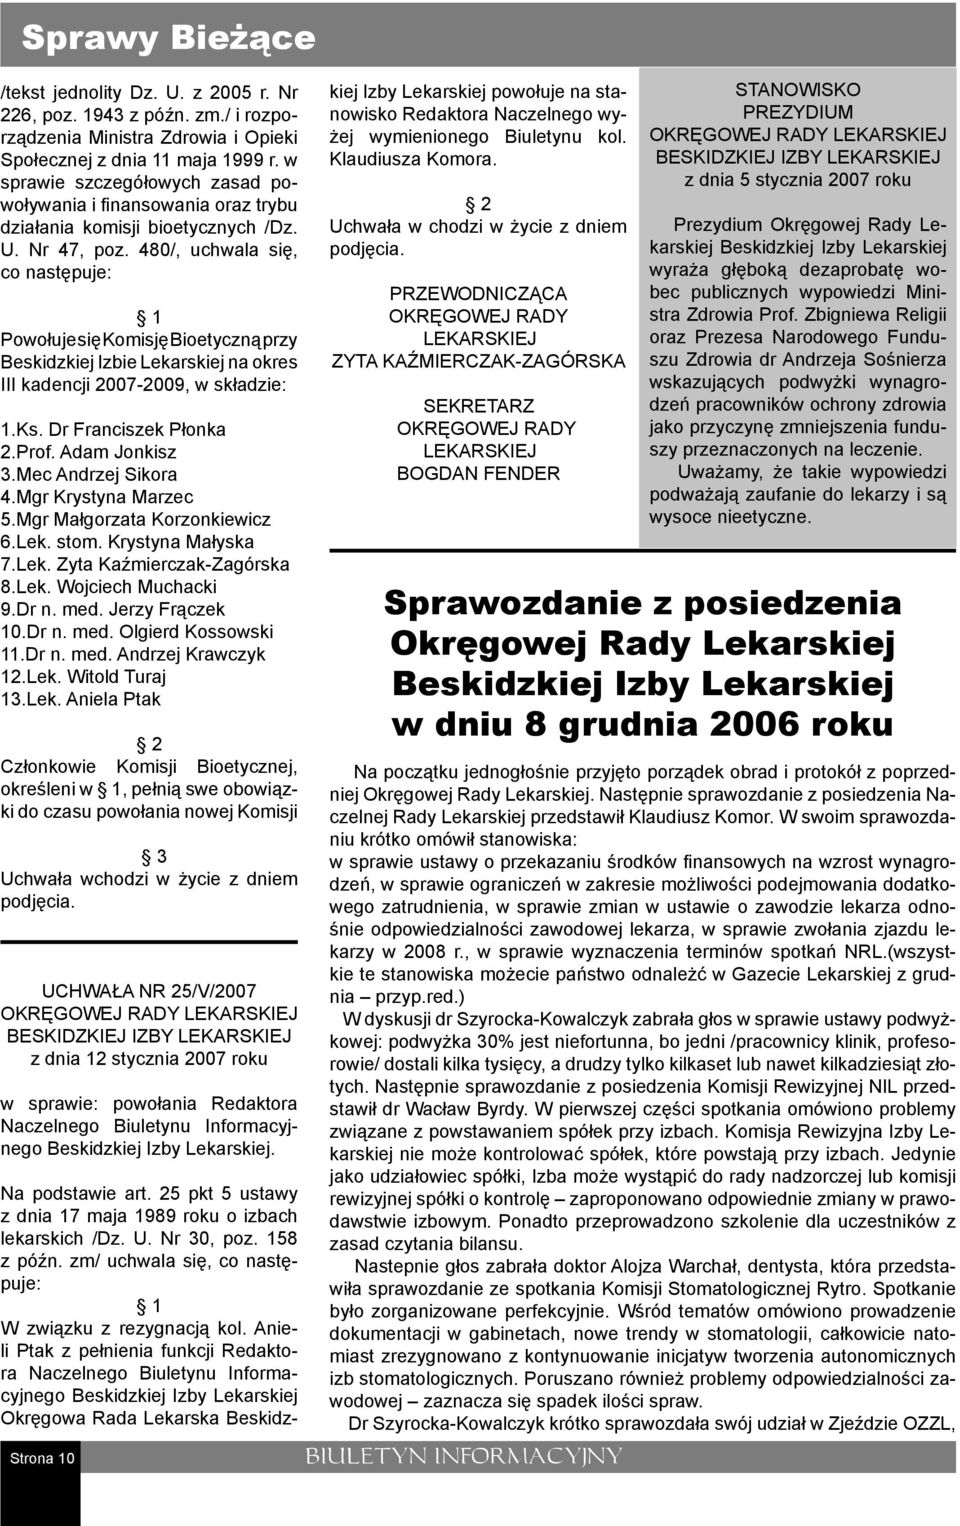 480/, uchwala się, co następuje: Powołuje się Komisję Bioetyczną przy Beskidzkiej Izbie Lekarskiej na okres III kadencji 2007-2009, w składzie: 1.Ks. Dr Franciszek Płonka 2.Prof. Adam Jonkisz 3.